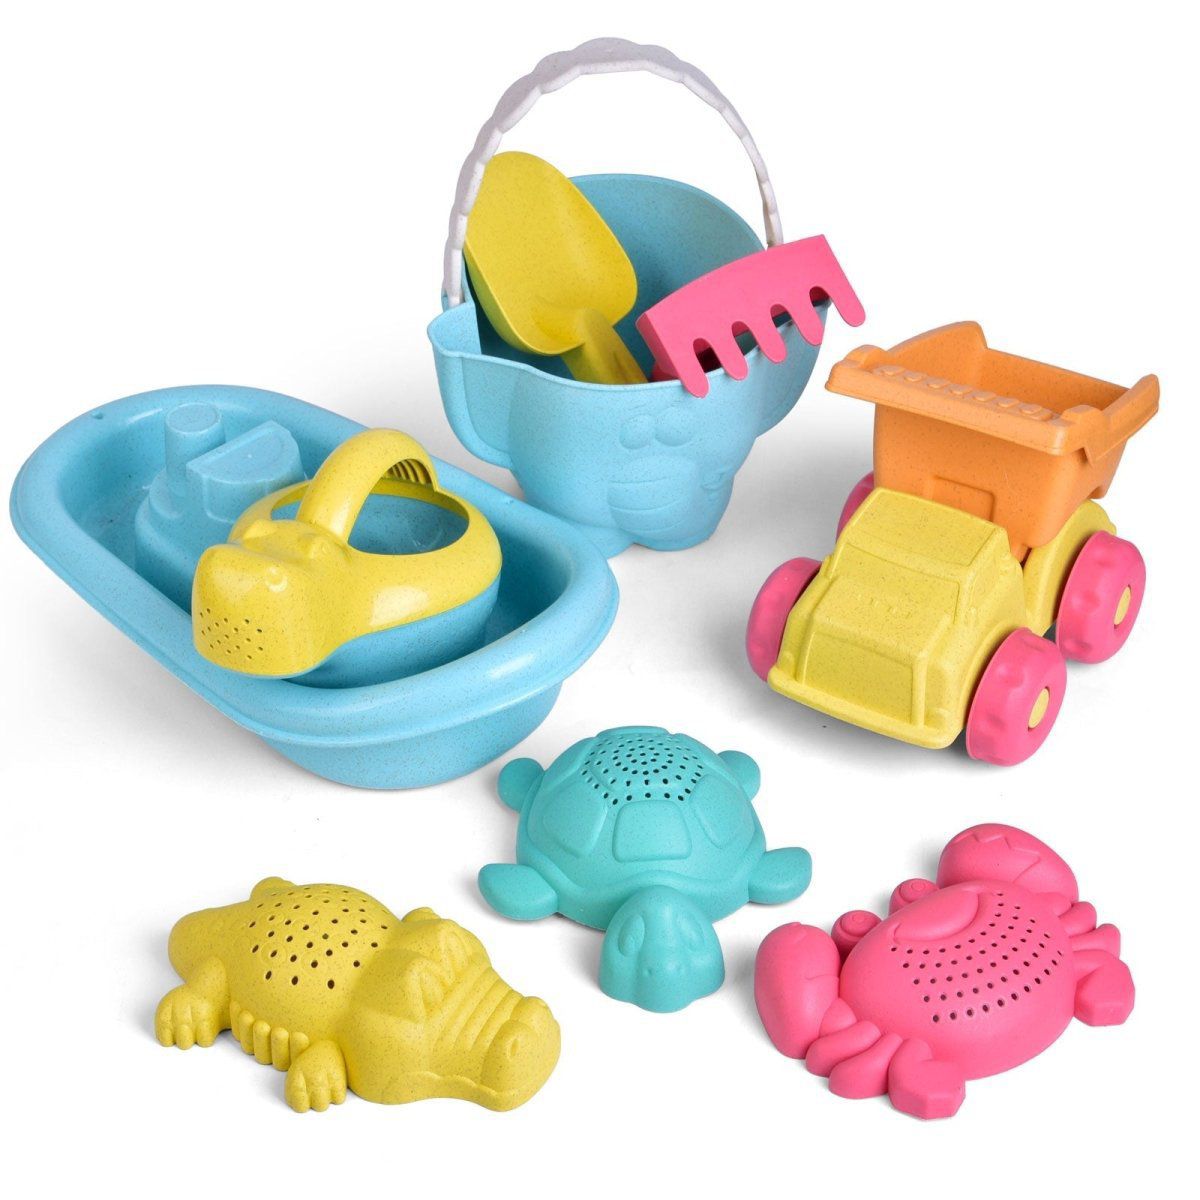 19 шт игрушки для пляжа и песка с морскими животными для детей popfun Набор игрушек для пляжного песка Popfun